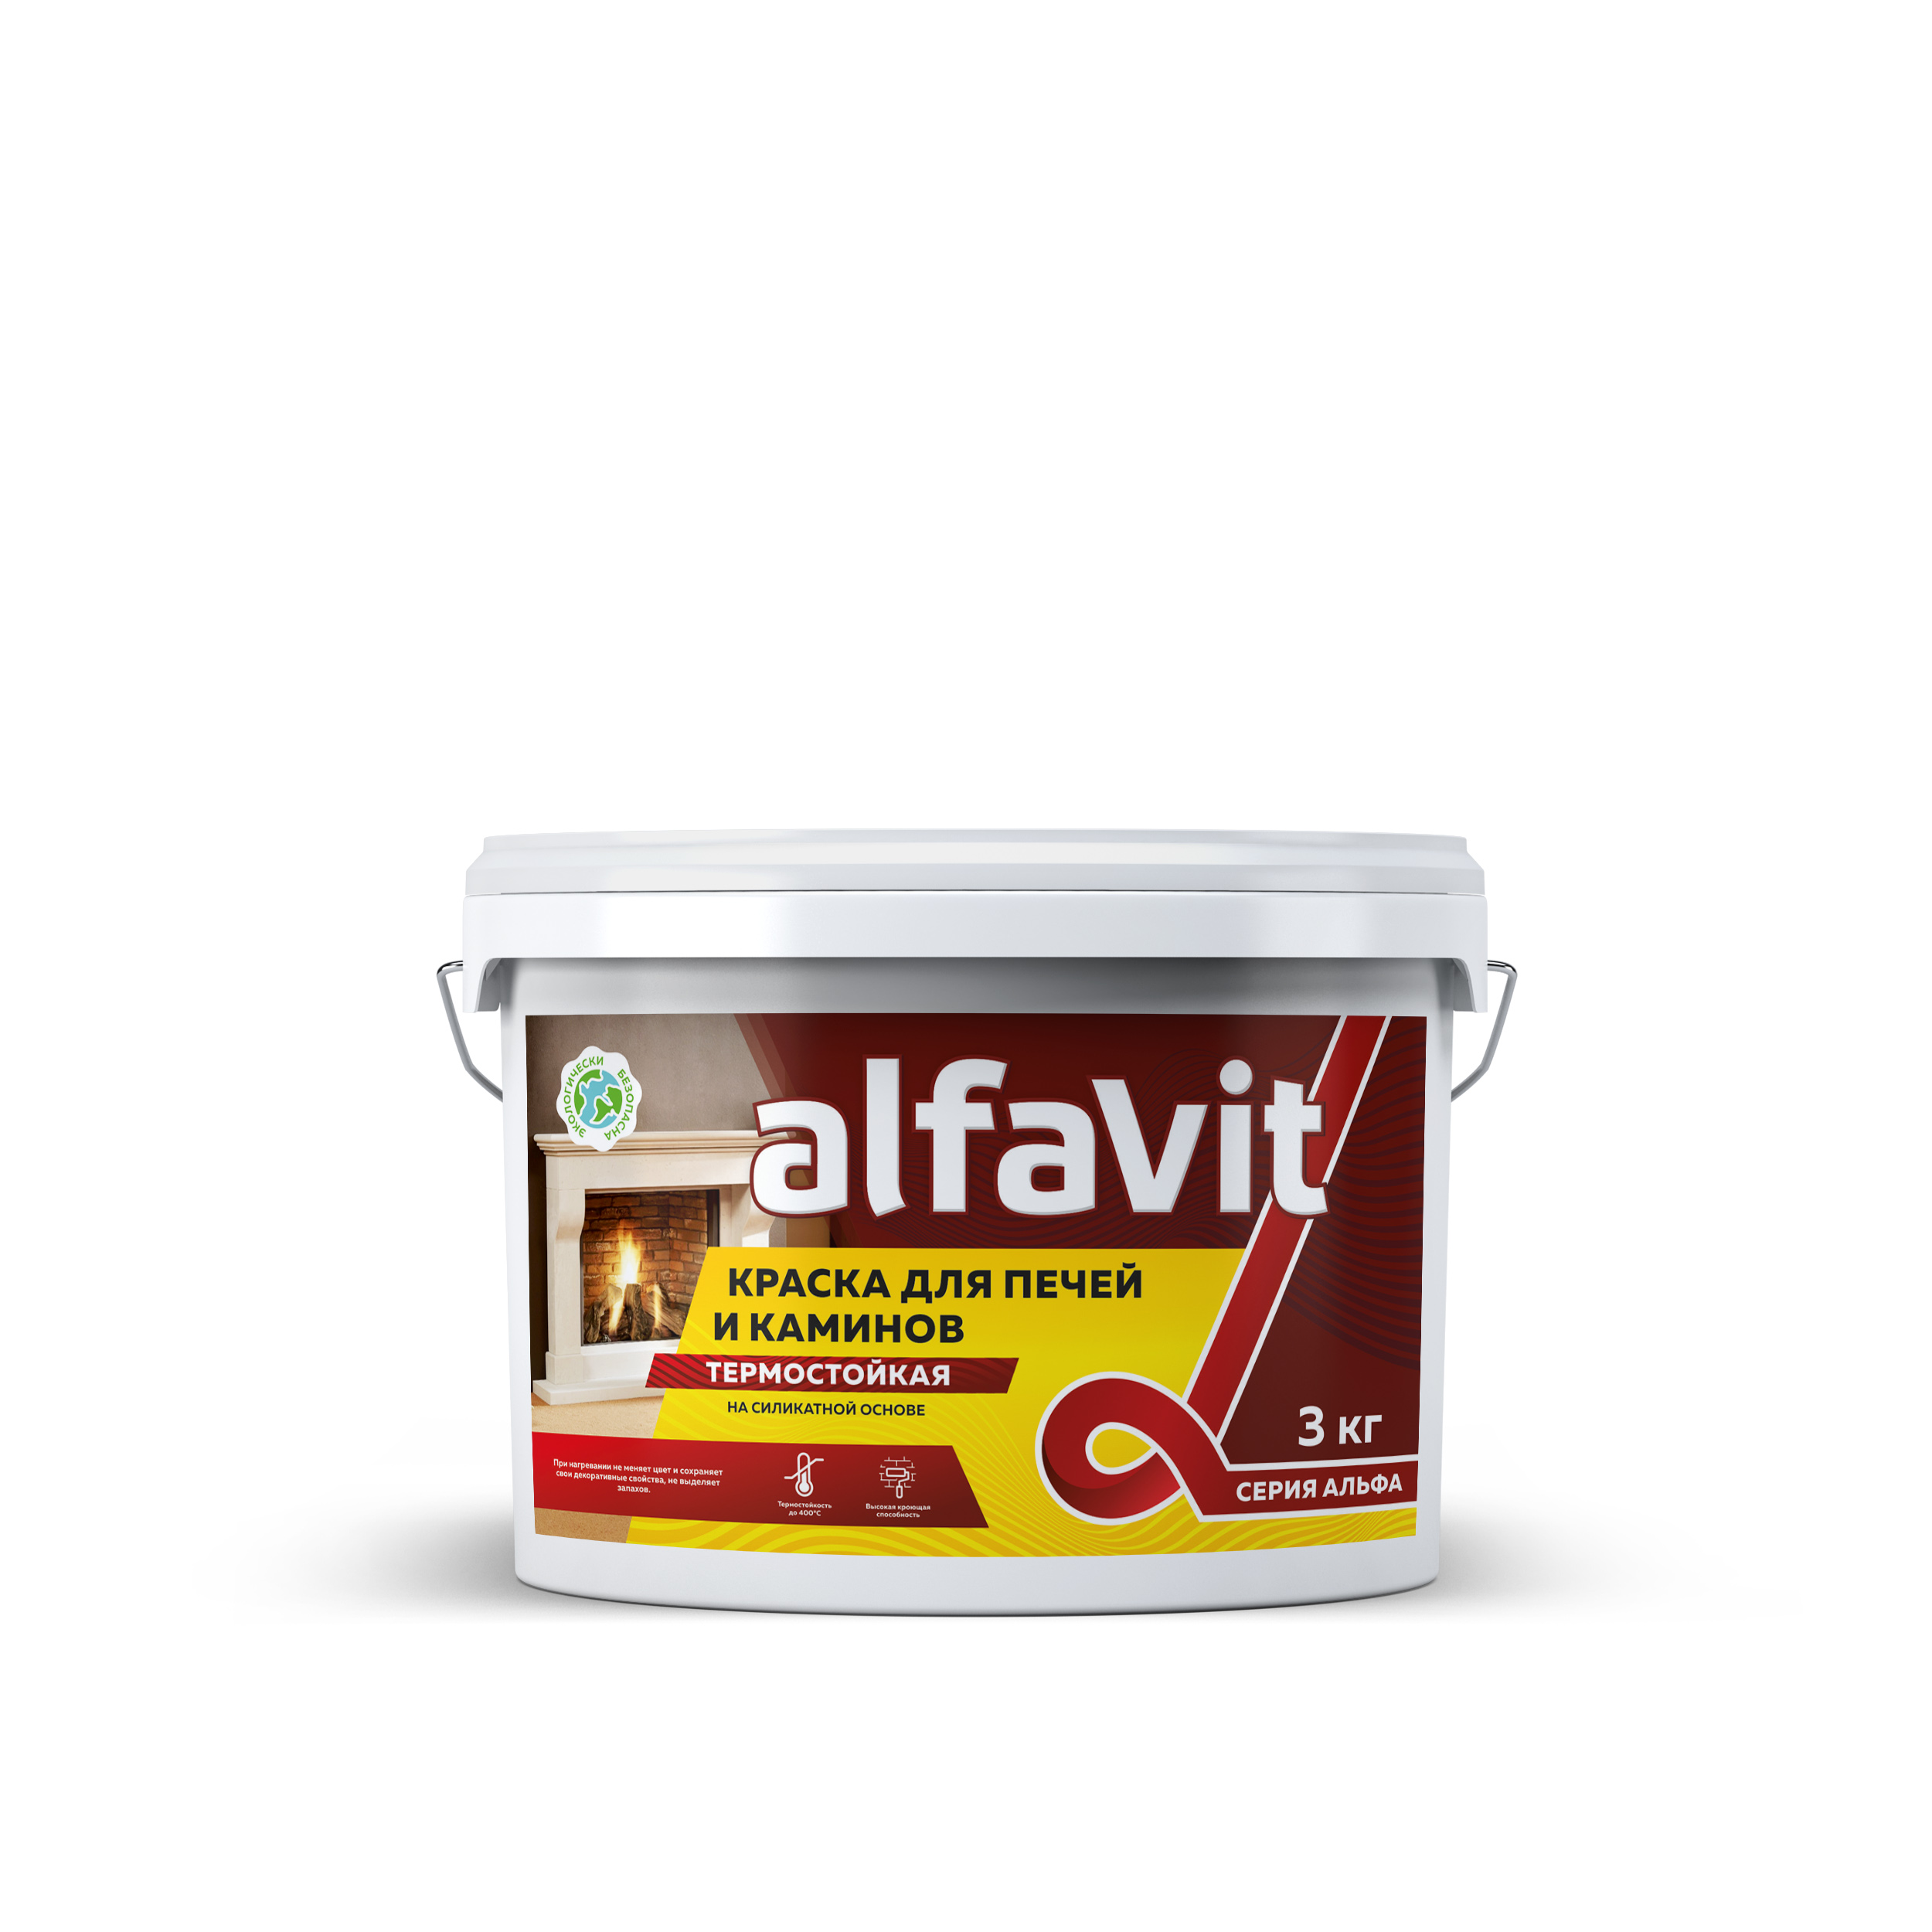 Краска для печей и каминов Alfavit серия Альфа, термостойкая, белая, 3 кг краска для печей и каминов palizh